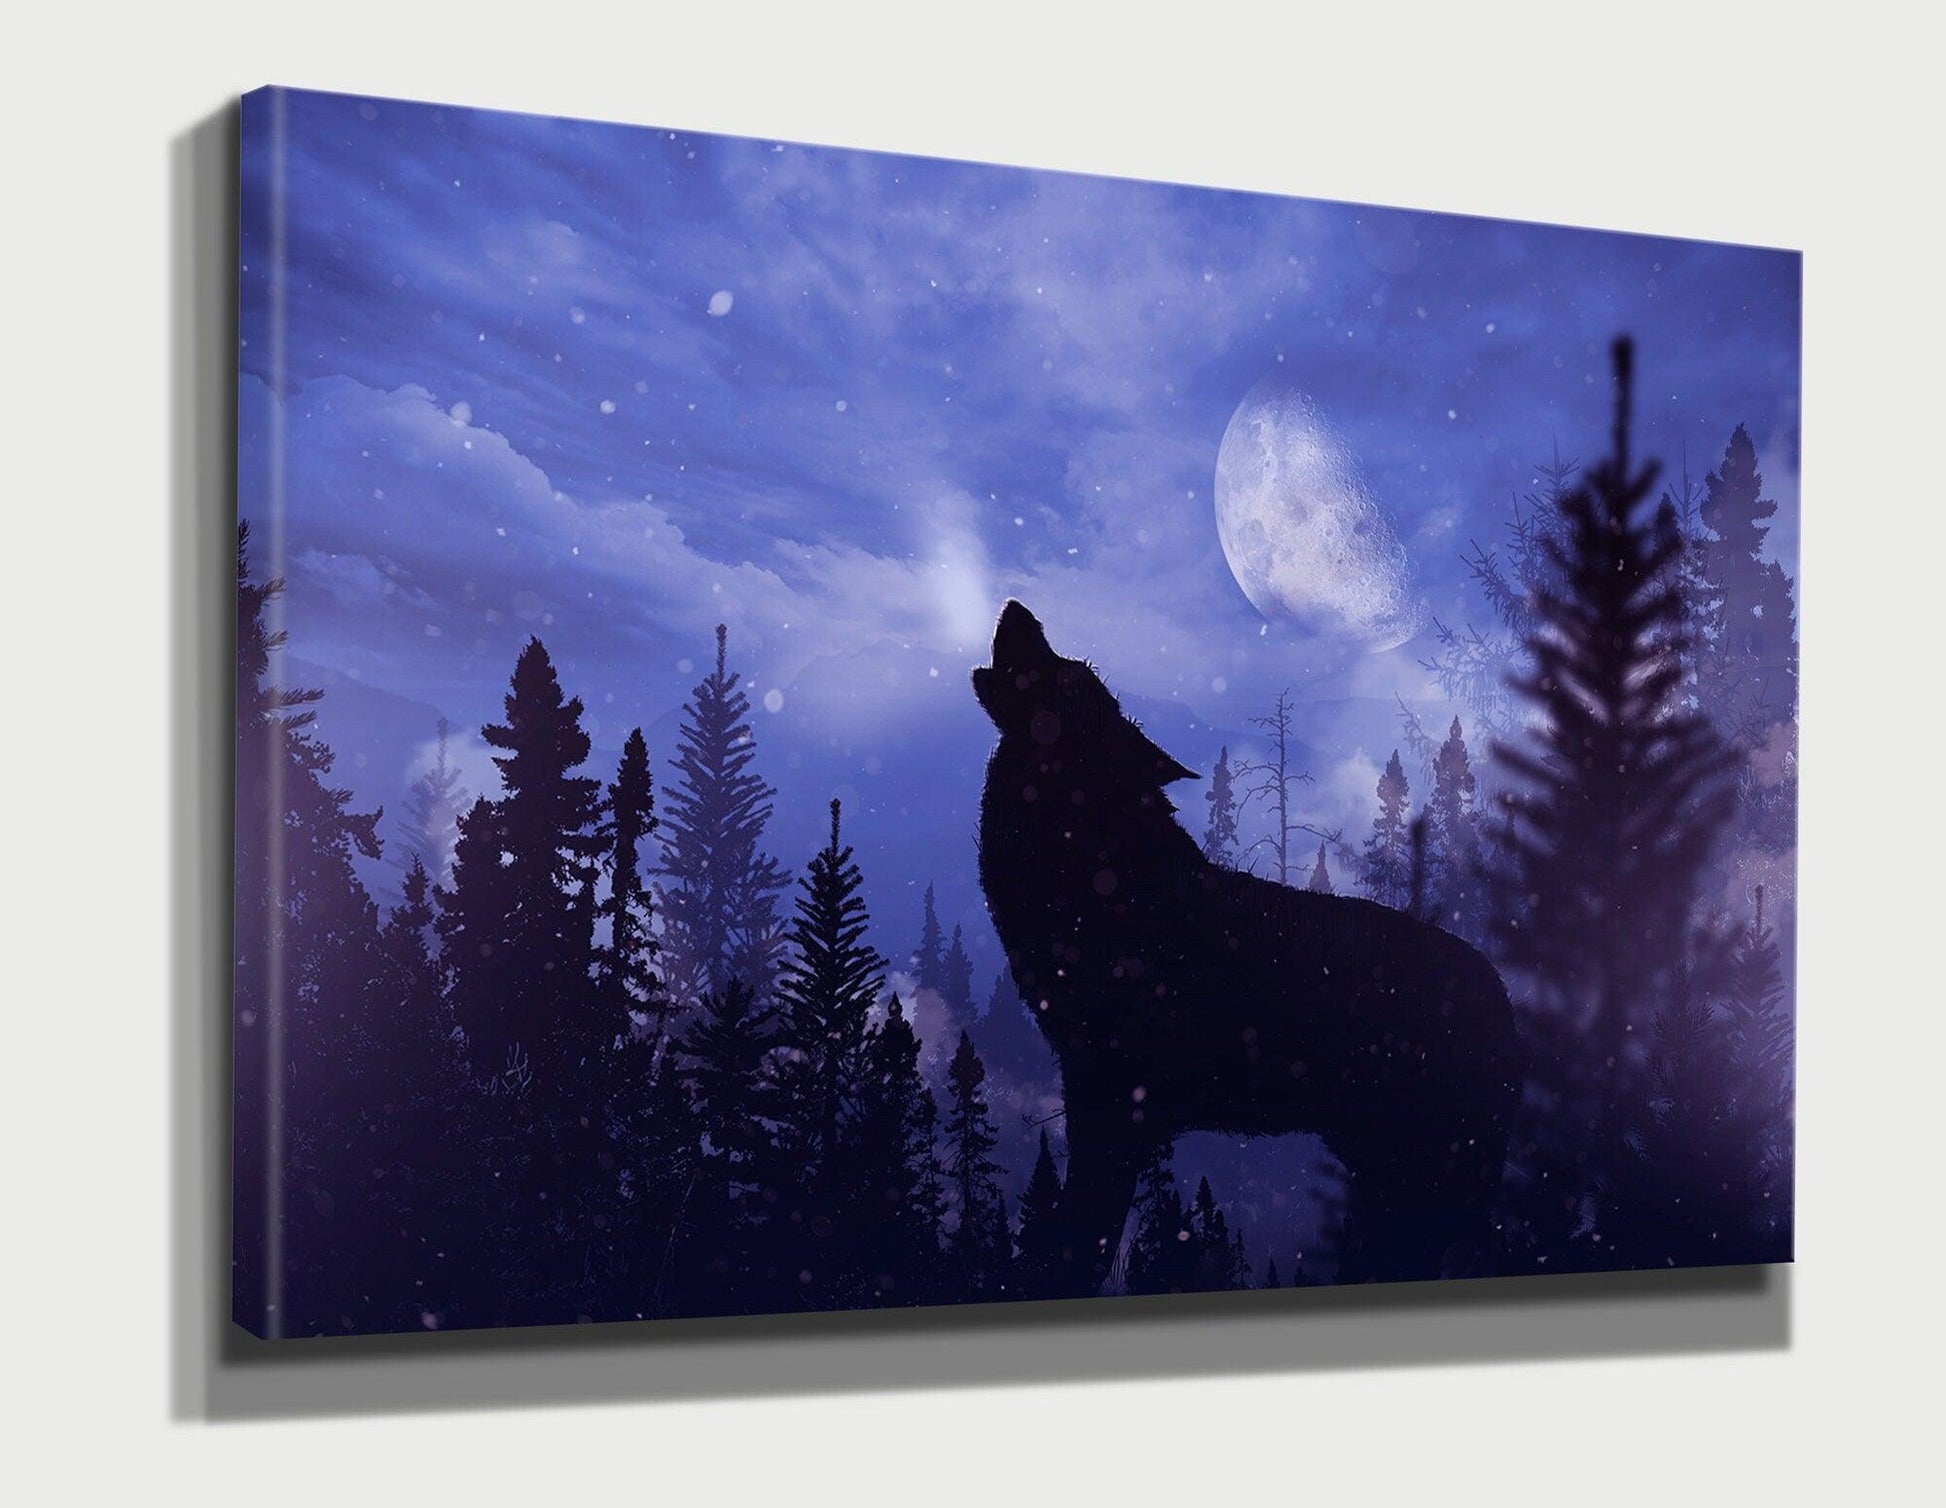 Howling Wolf canvas wall art| Beautiful Animal wall decor, animal Canvas Art, Wolf Art, Wolf Wall Art, Wolf Wall Decor, Animal canvas decor